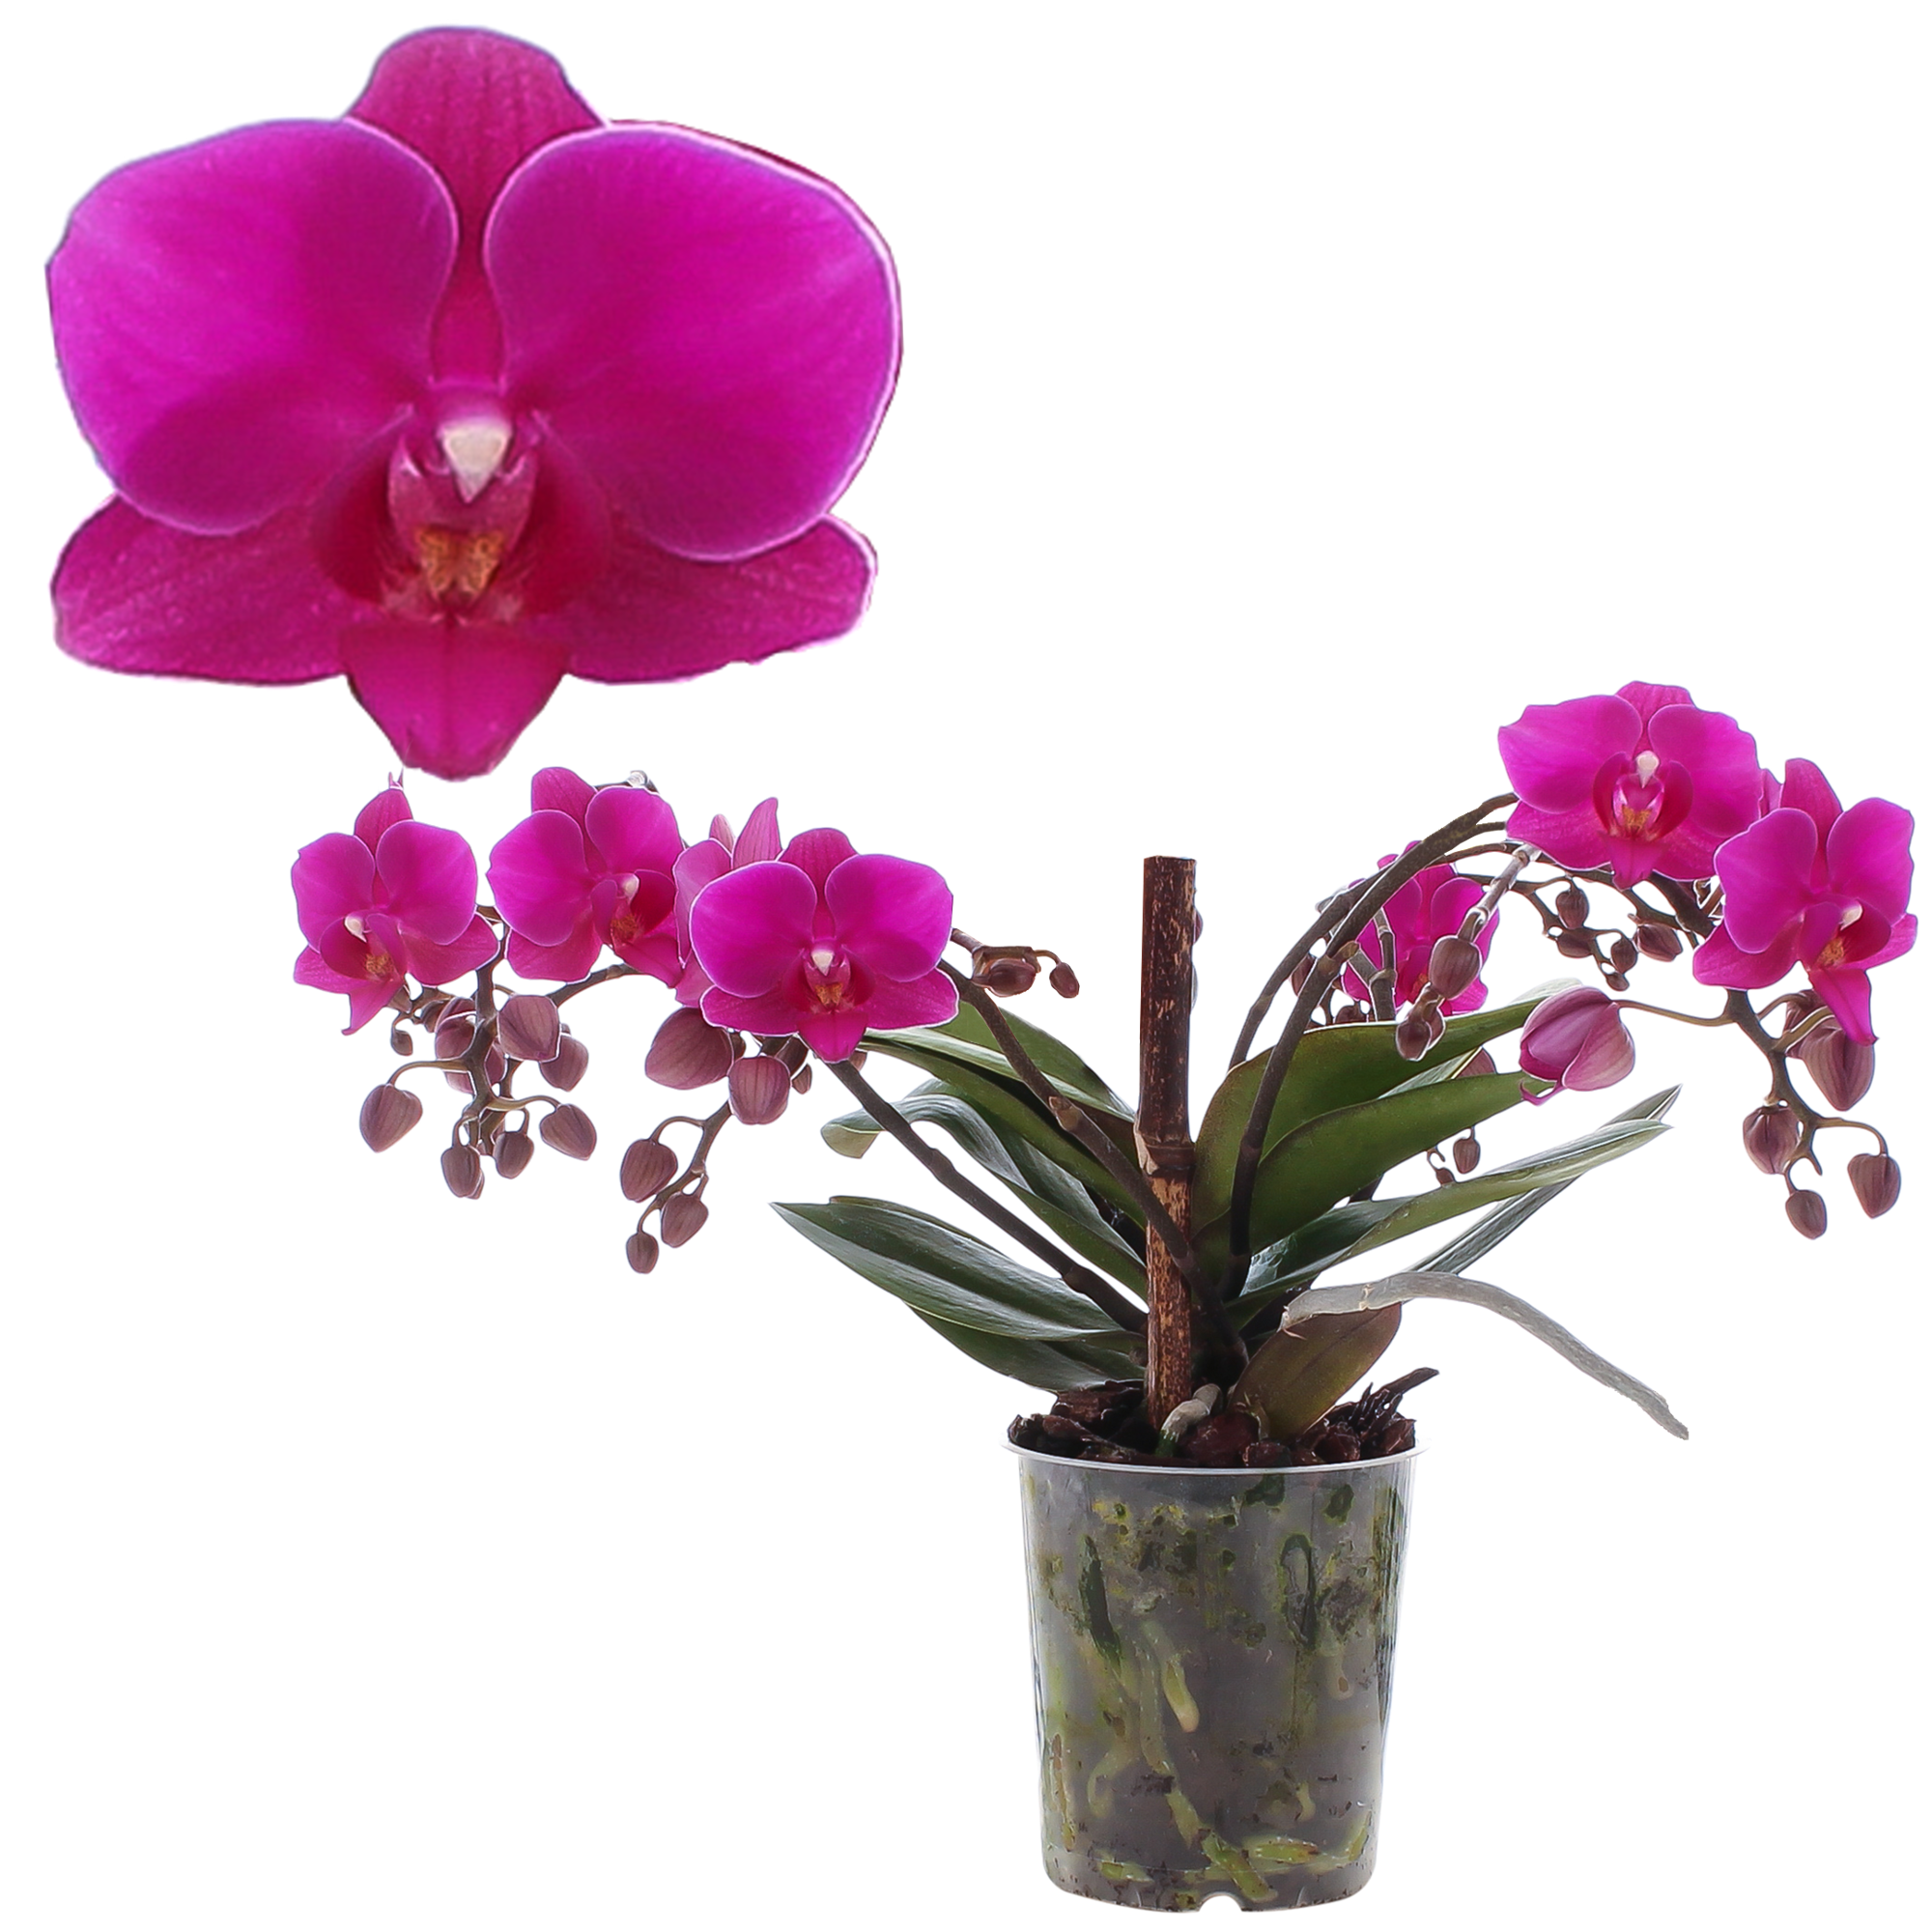 Schmetterlingsorchidee 'Artisto Deco' pink, 9 cm Topf + product picture